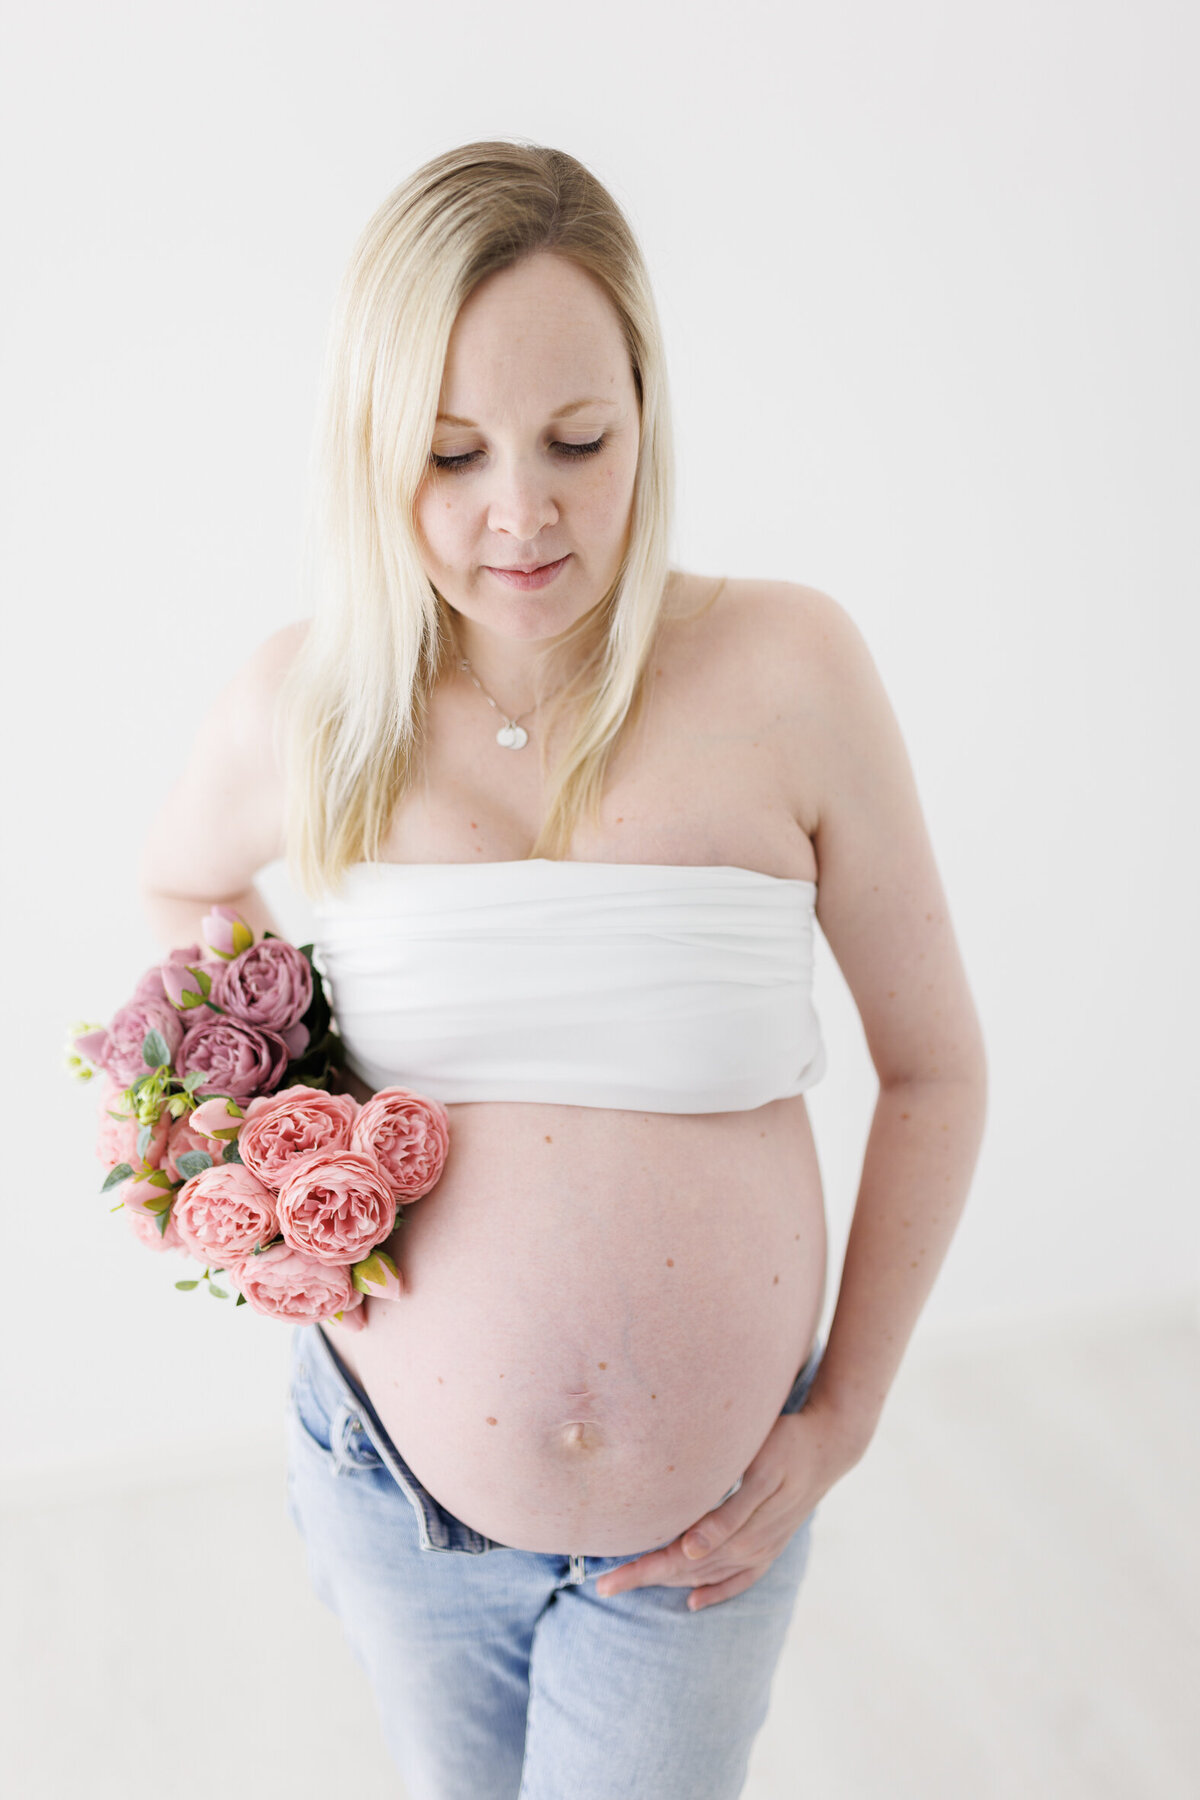 En gravid kvinne fotografert i Studio Landmark. Kvinnen har på blå dongeribukse som er åpen, hvit topp over brystene og en blomsterbukett i høyre hånd. Fotografert i Studio Landmark, Fyllingsdalen.